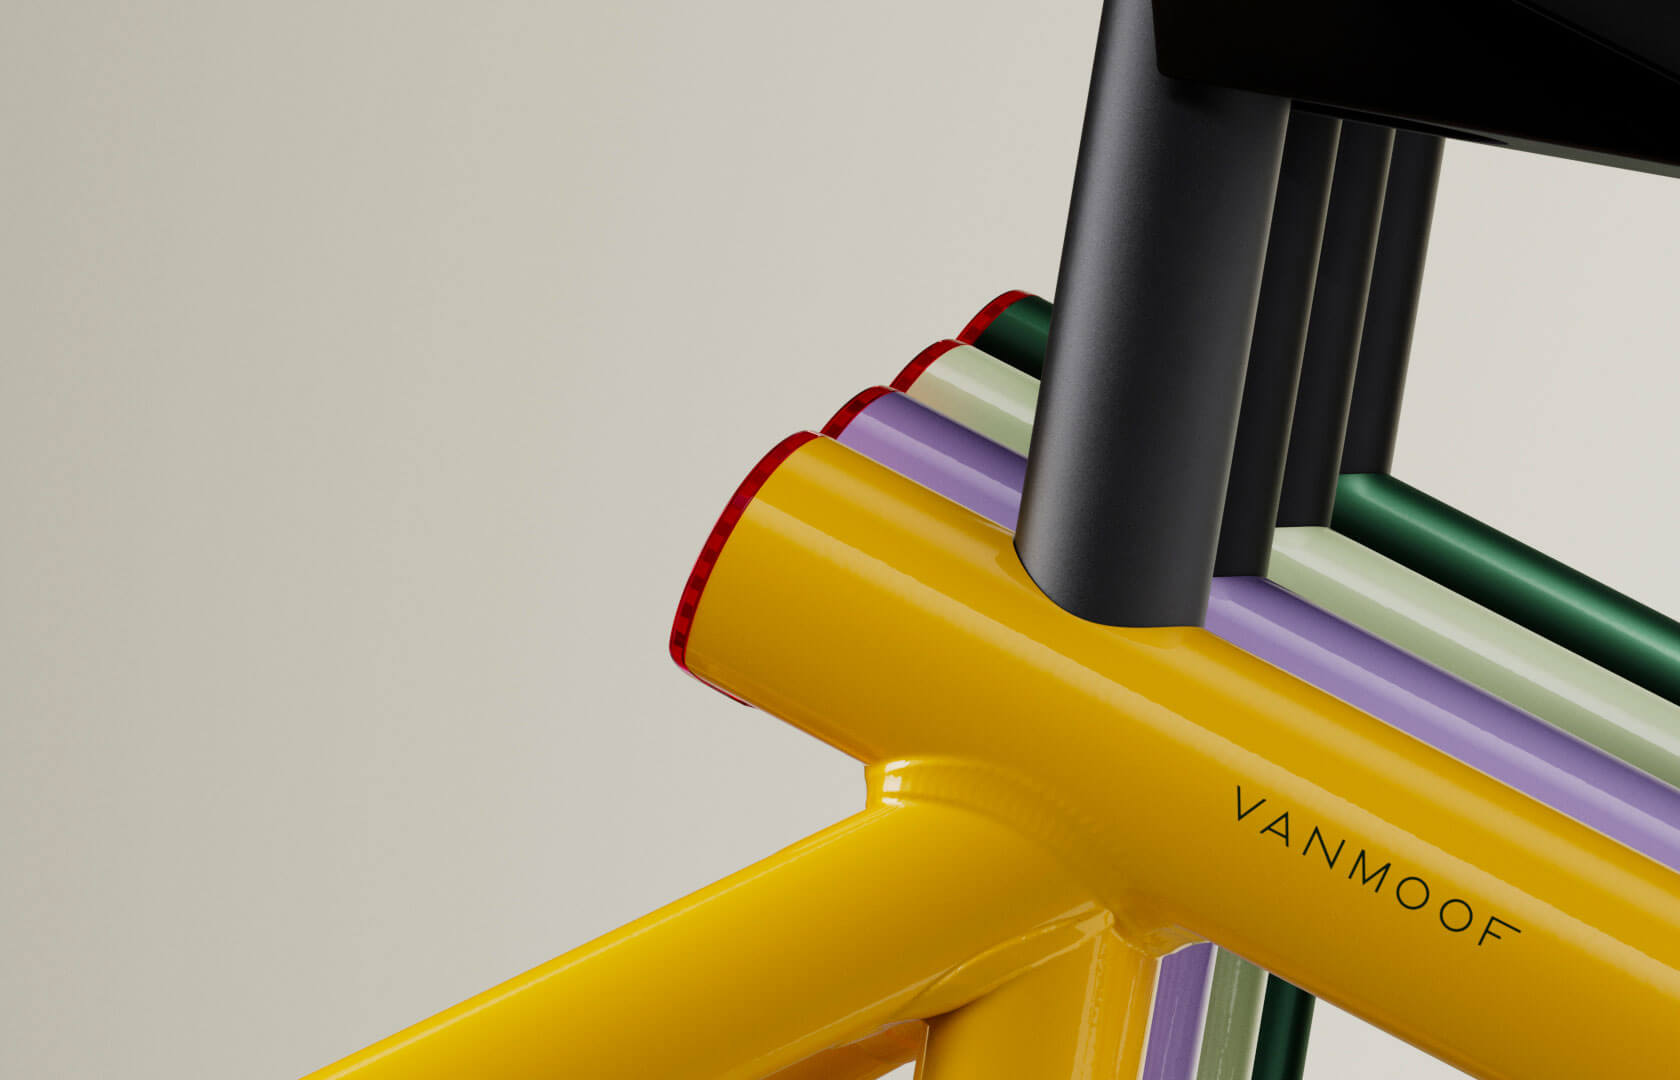 线条流畅，设计简约！VanMoof电动自行车设计